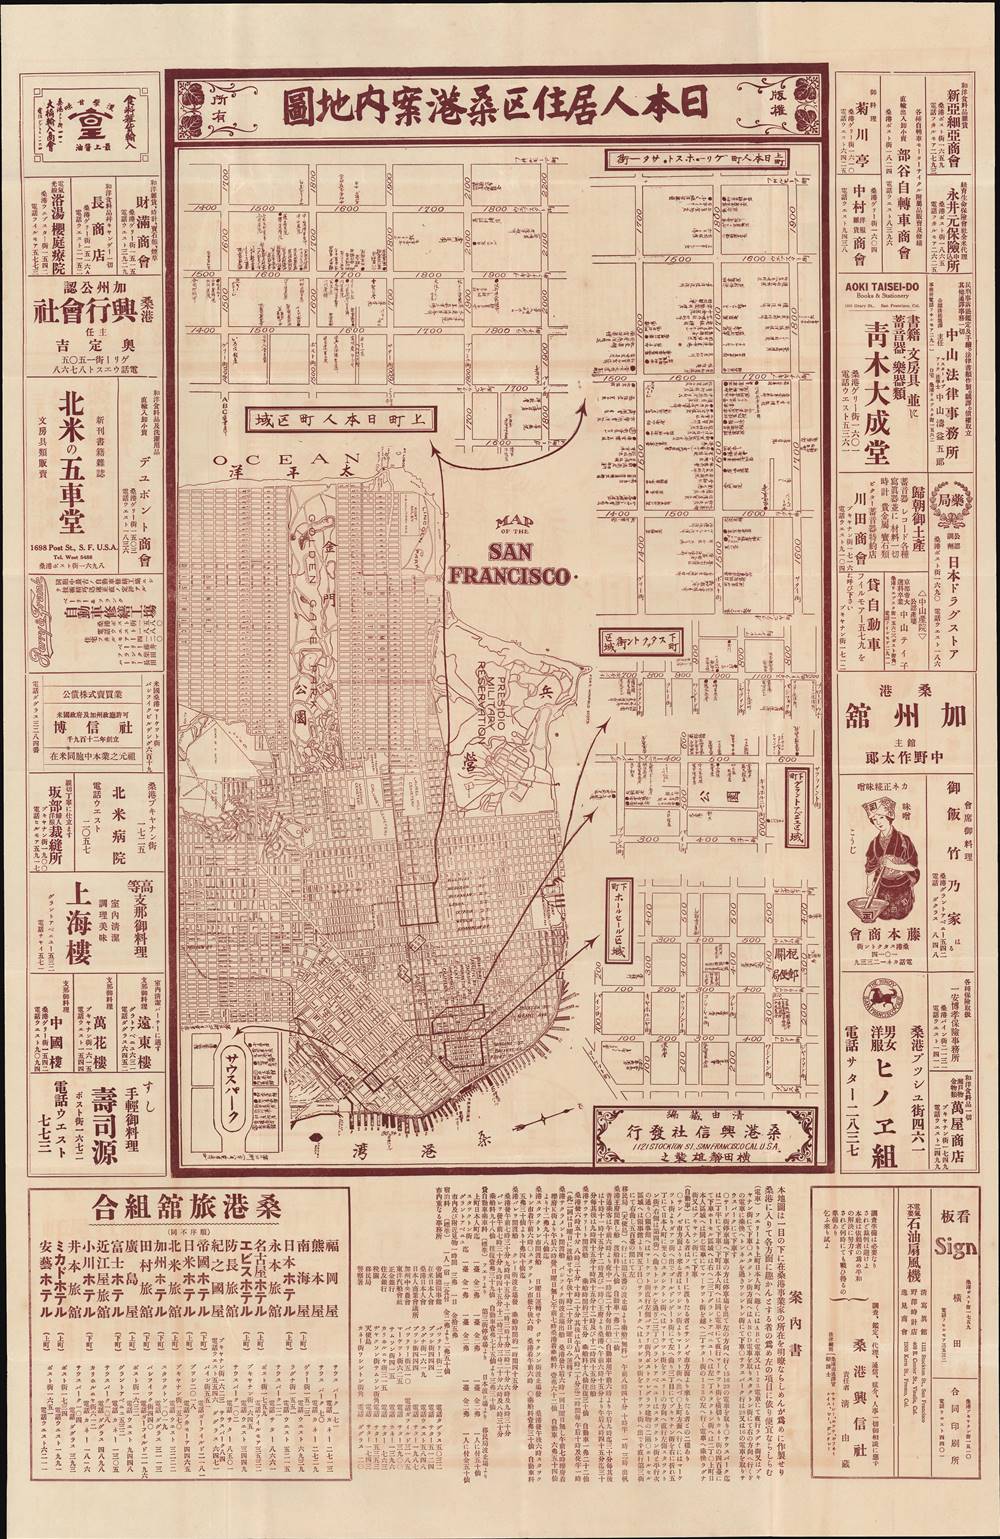 日本人居住区桑港案内地圖 / [San Francisco Guide Map of Neighborhoods with Japanese Residents]. - Main View